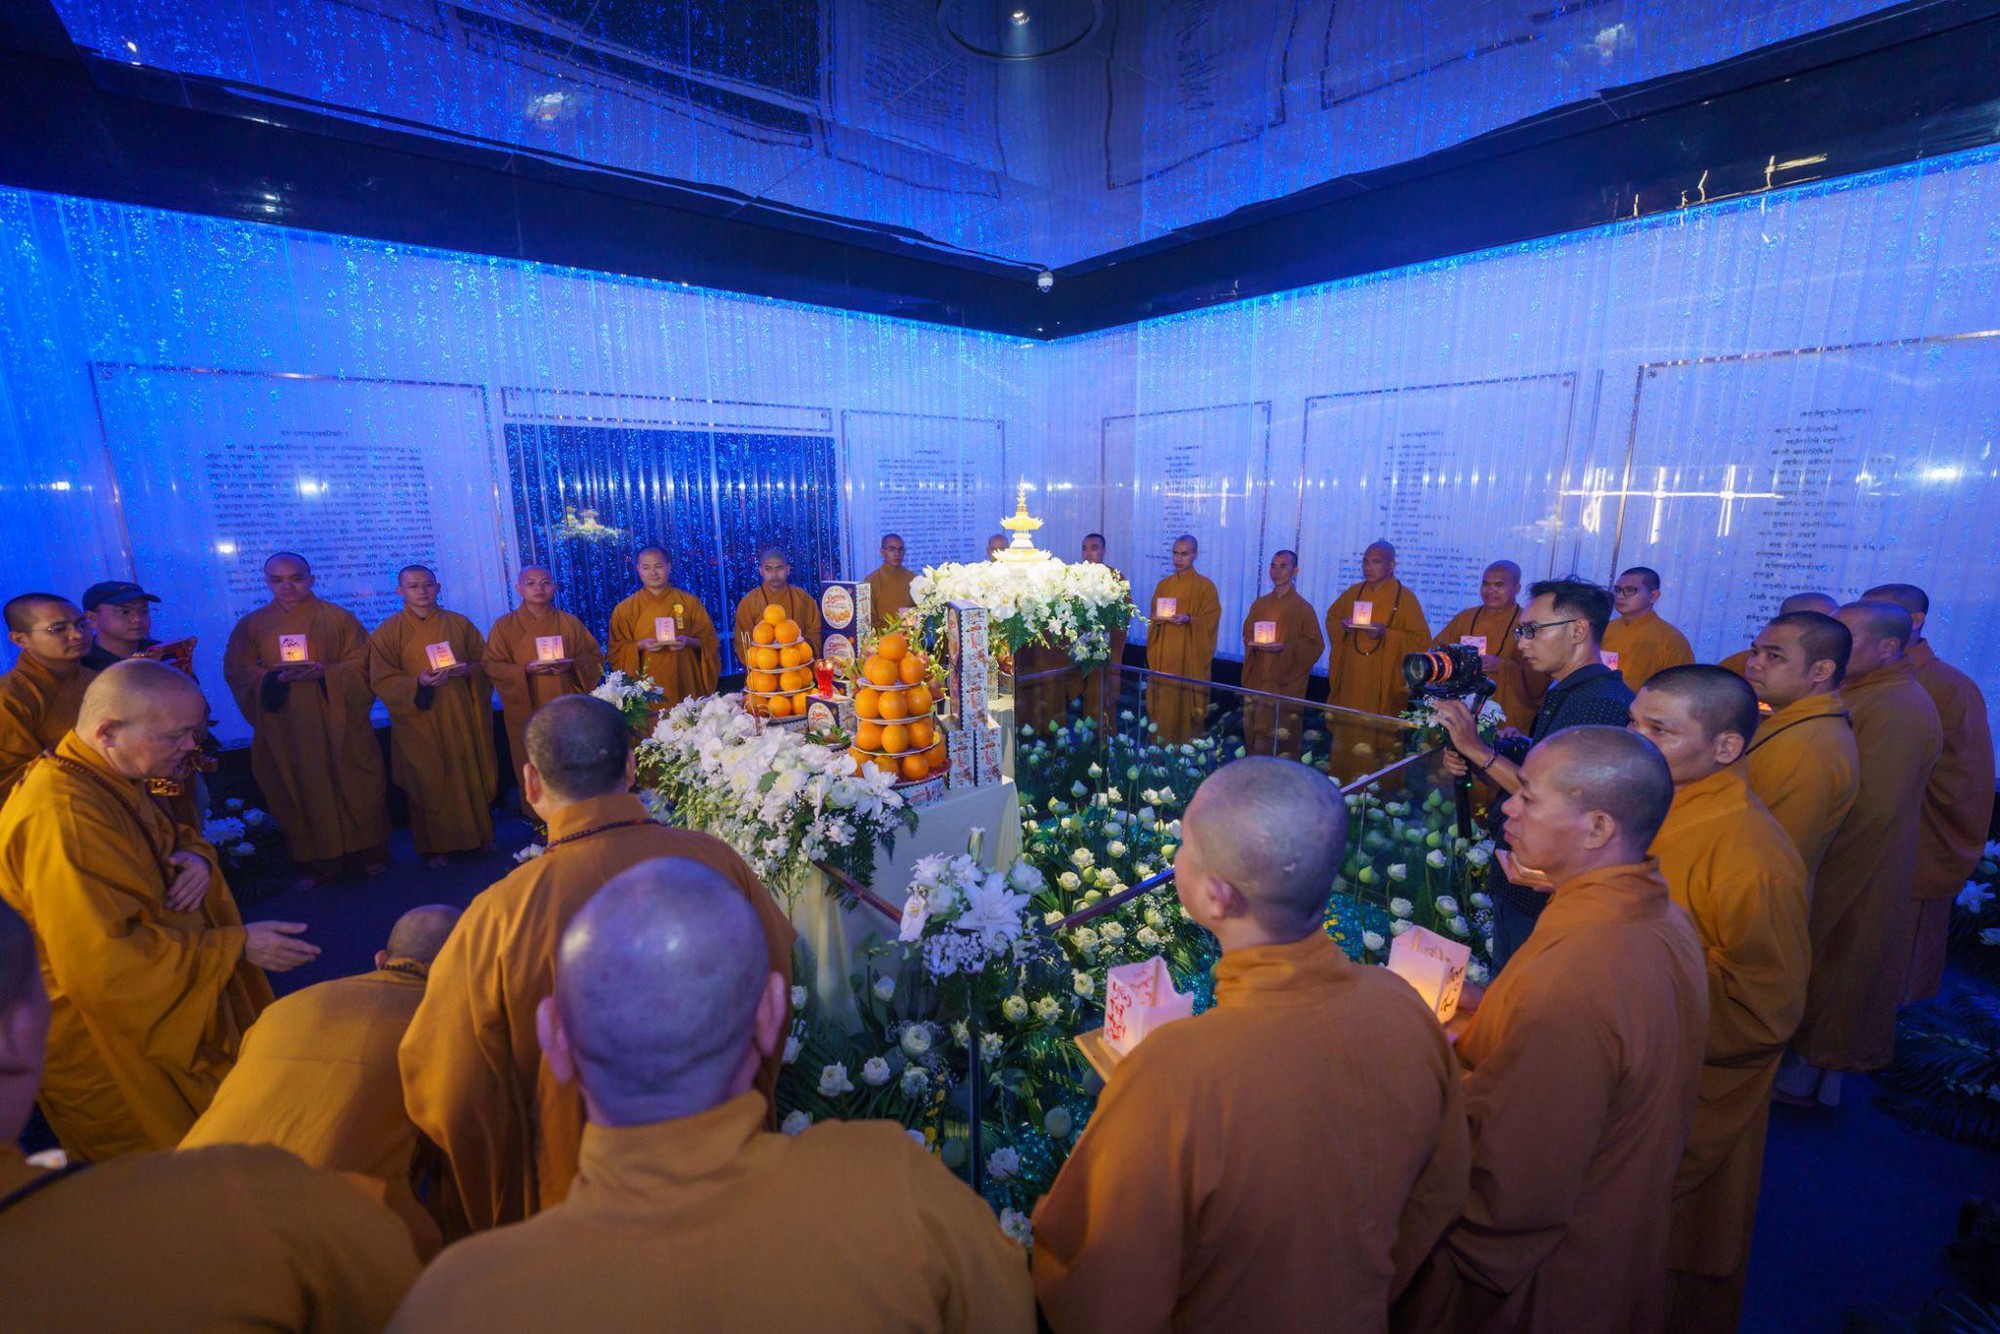 Phật tử khắp cả nước tìm về Núi Bà Đen, Tây Ninh thực hành hiếu đạo mùa Vu Lan - Ảnh 3.